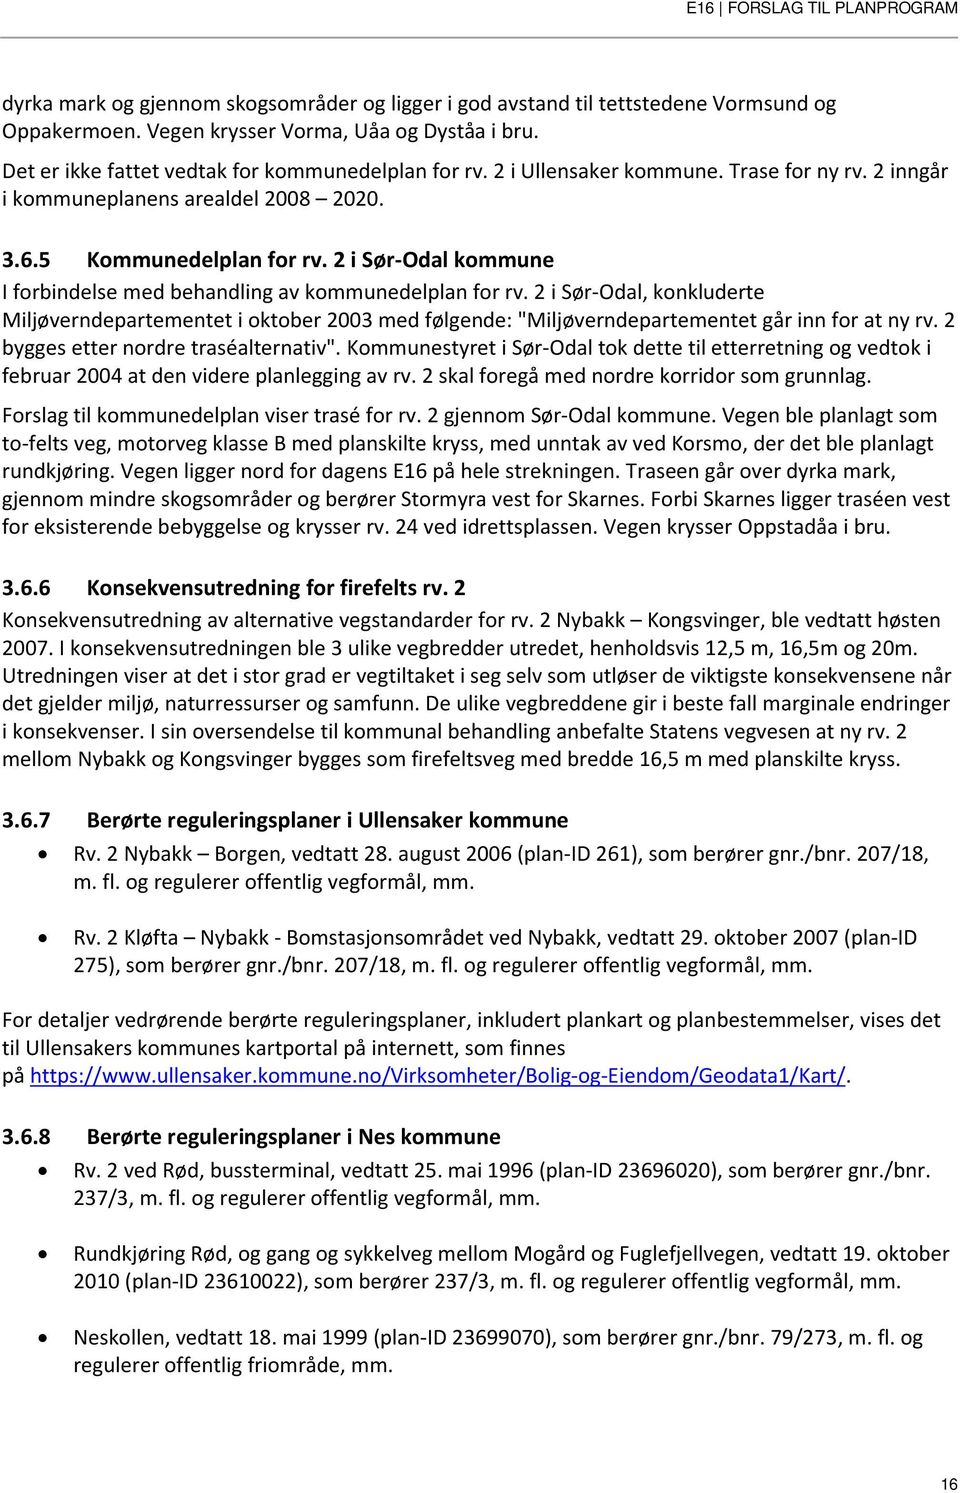 2 i Sør-Odal, konkluderte Miljøverndepartementet i oktober 2003 med følgende: "Miljøverndepartementet går inn for at ny rv. 2 bygges etter nordre traséalternativ".